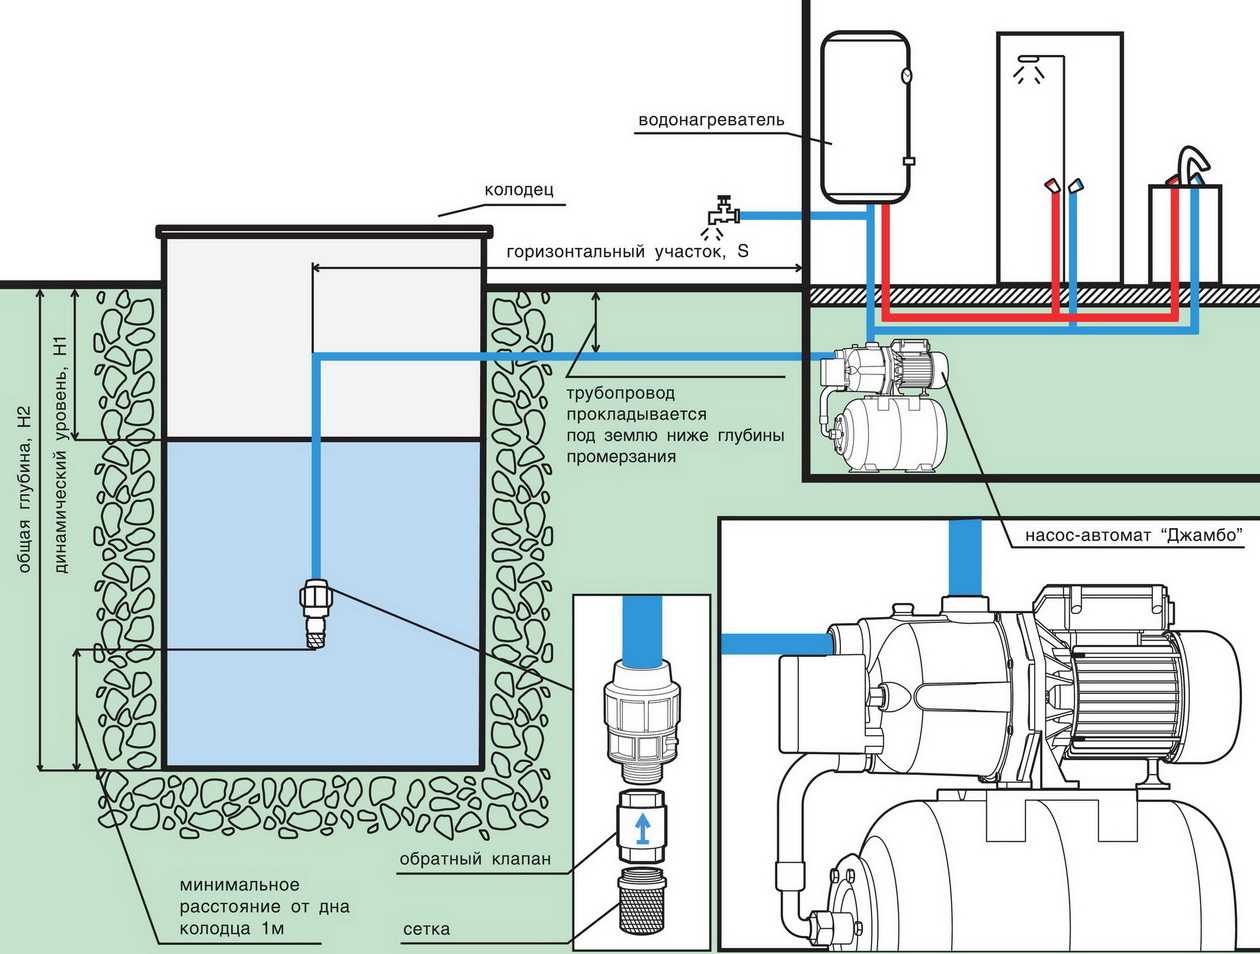 Владельцы загородных домов и участков, чтобы наладить комфортное проживание, должны обеспечить бесперебойное водоснабжение Оптимальный вариант оборудование